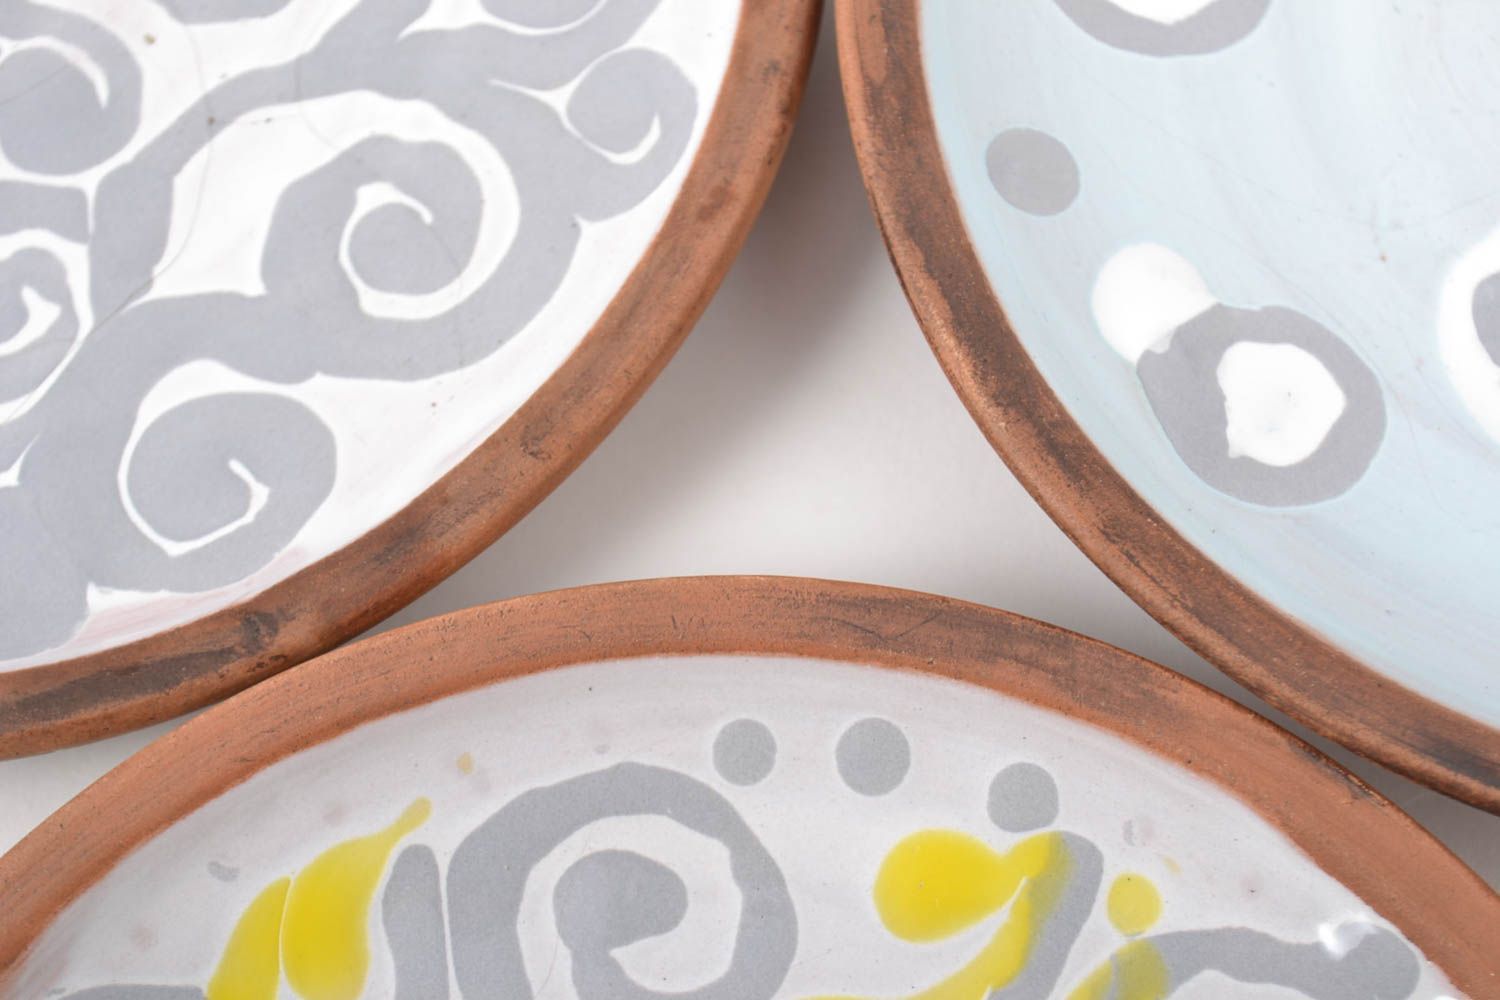 Handmade ceramic plate 3 pieces ceramic kitchenware kitchen supplies gift ideas photo 3